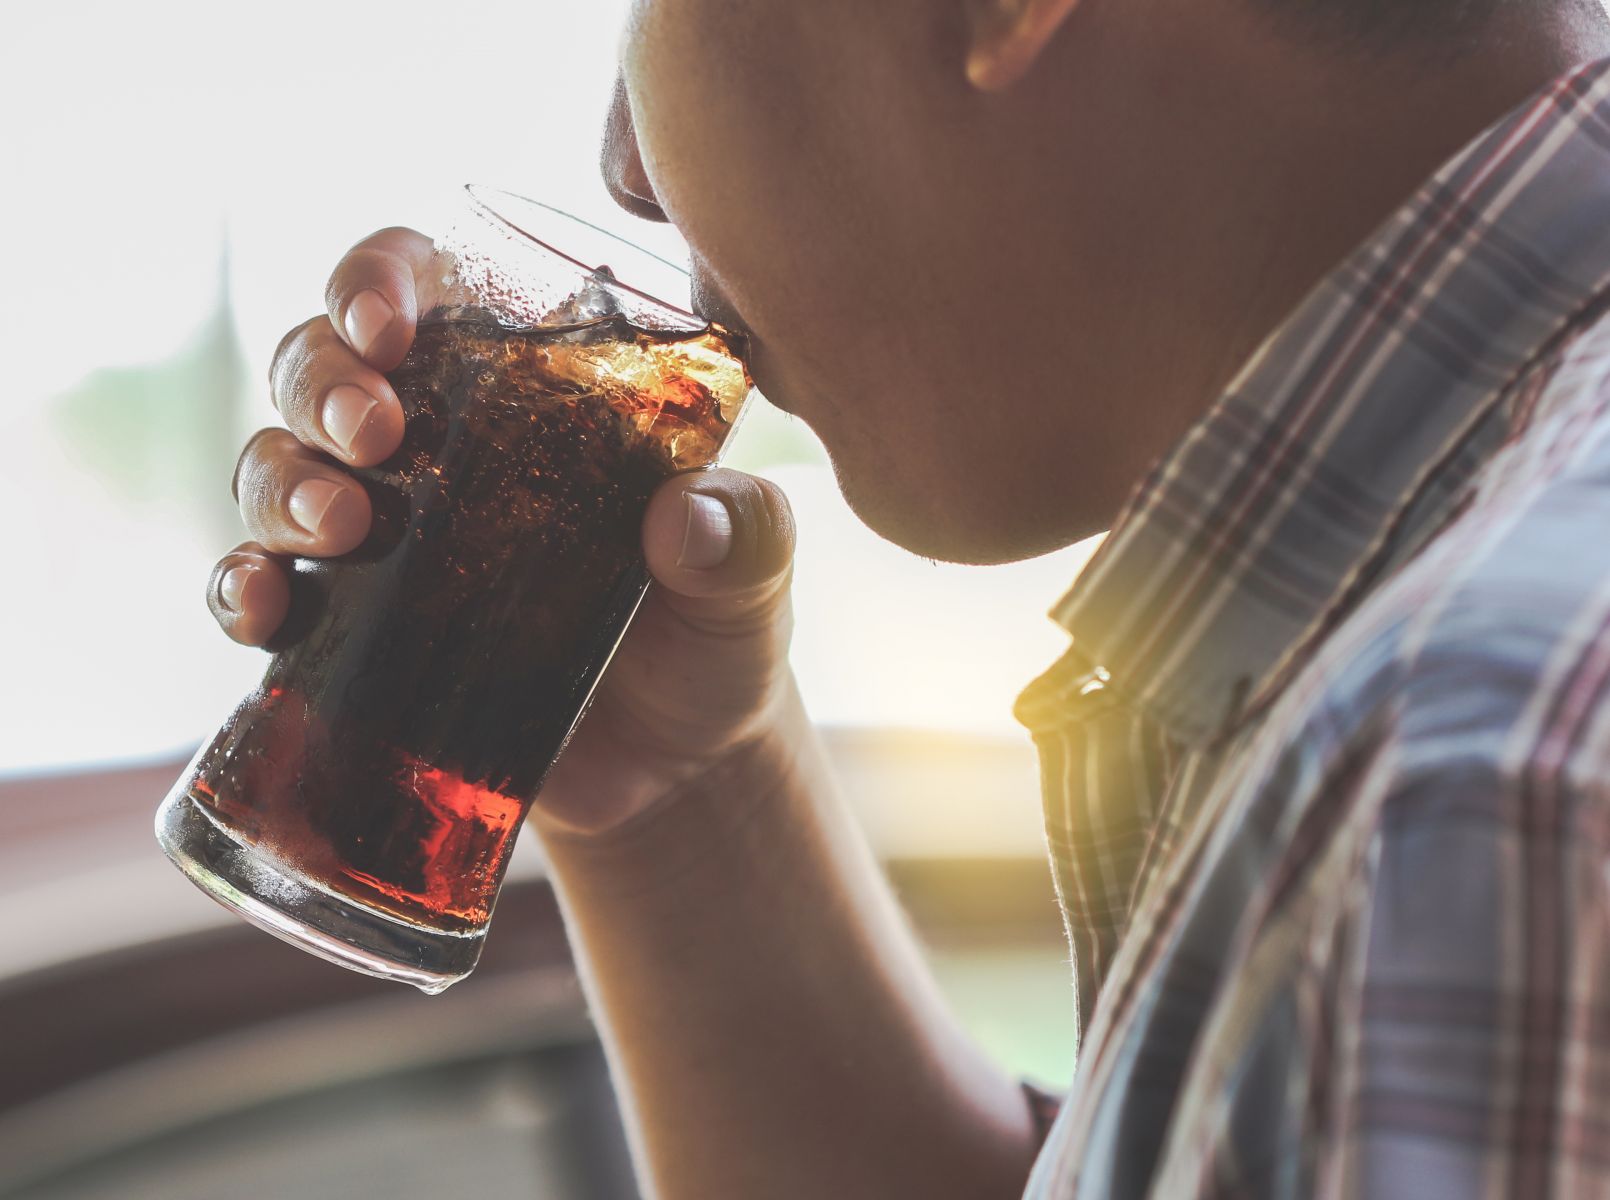 Không uống rượu bia, cậu bé 16 tuổi mắc bệnh gút vì thói quen nhiều người làm khi khát nước - 1